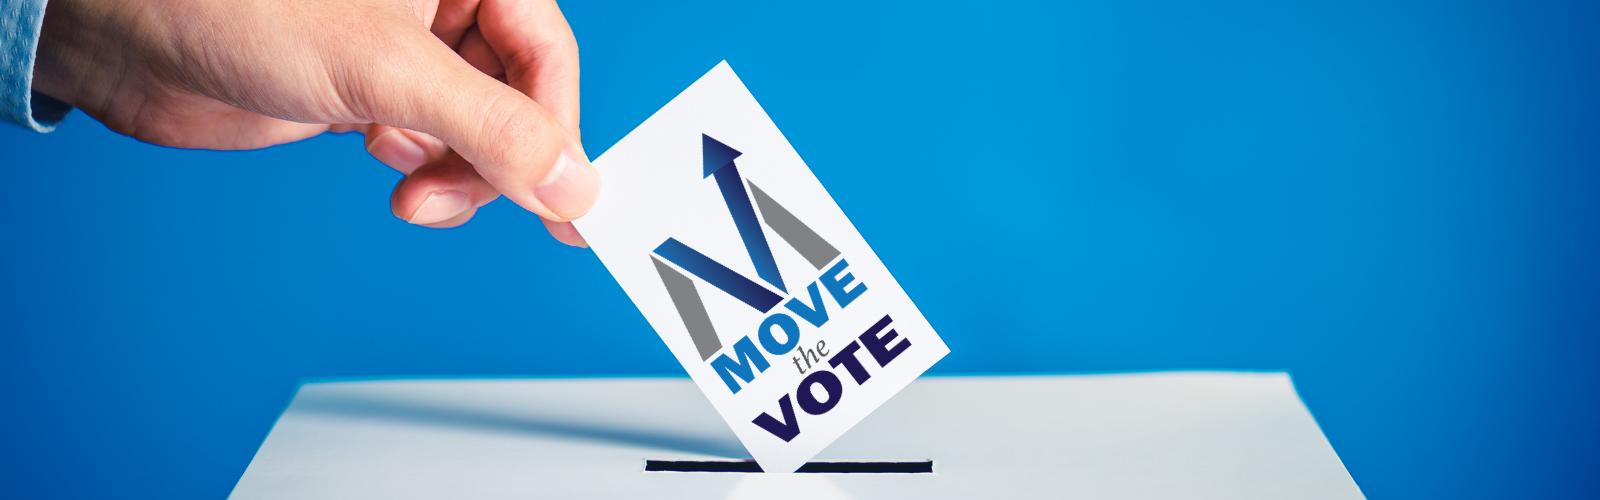 Move the Vote